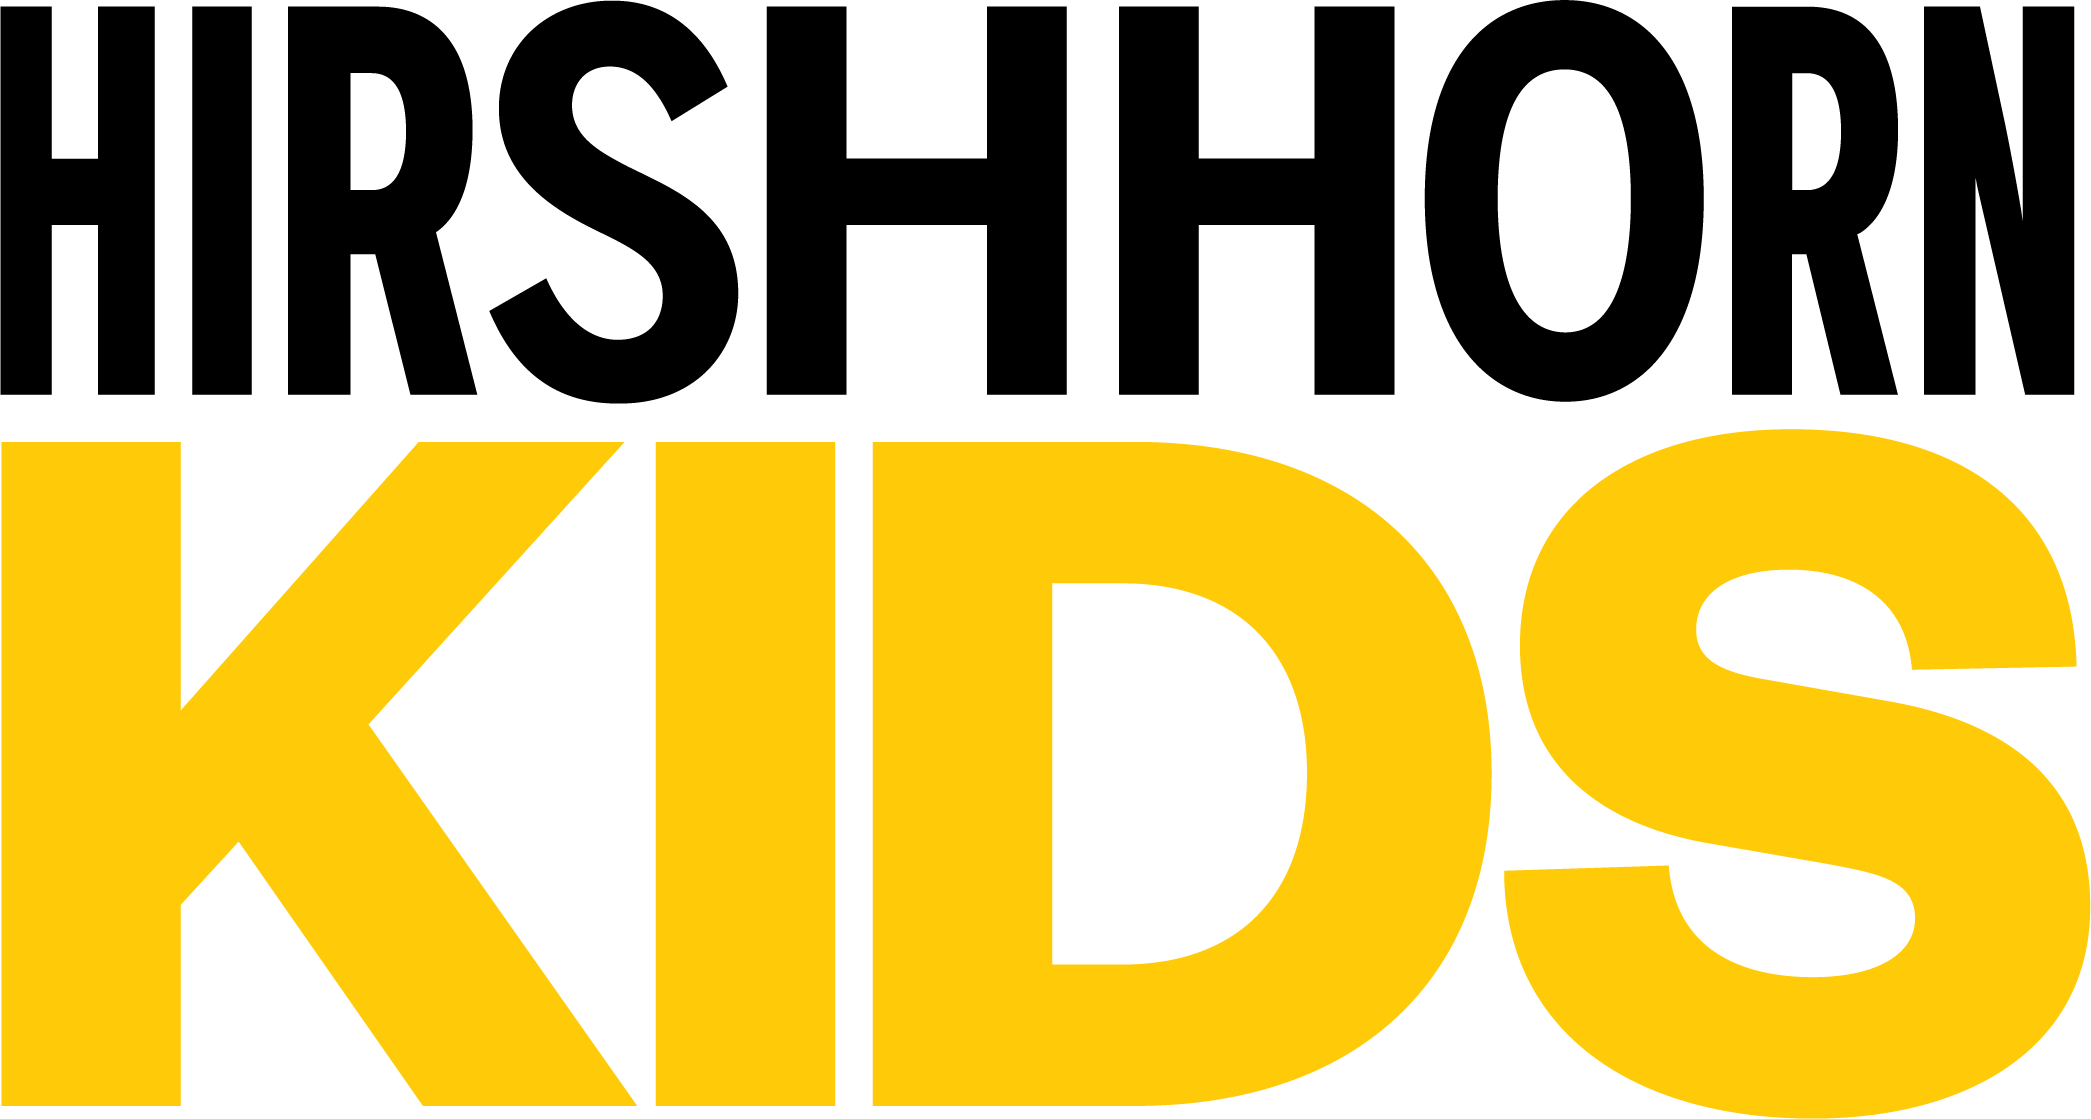 Hirshhorn Kids logo